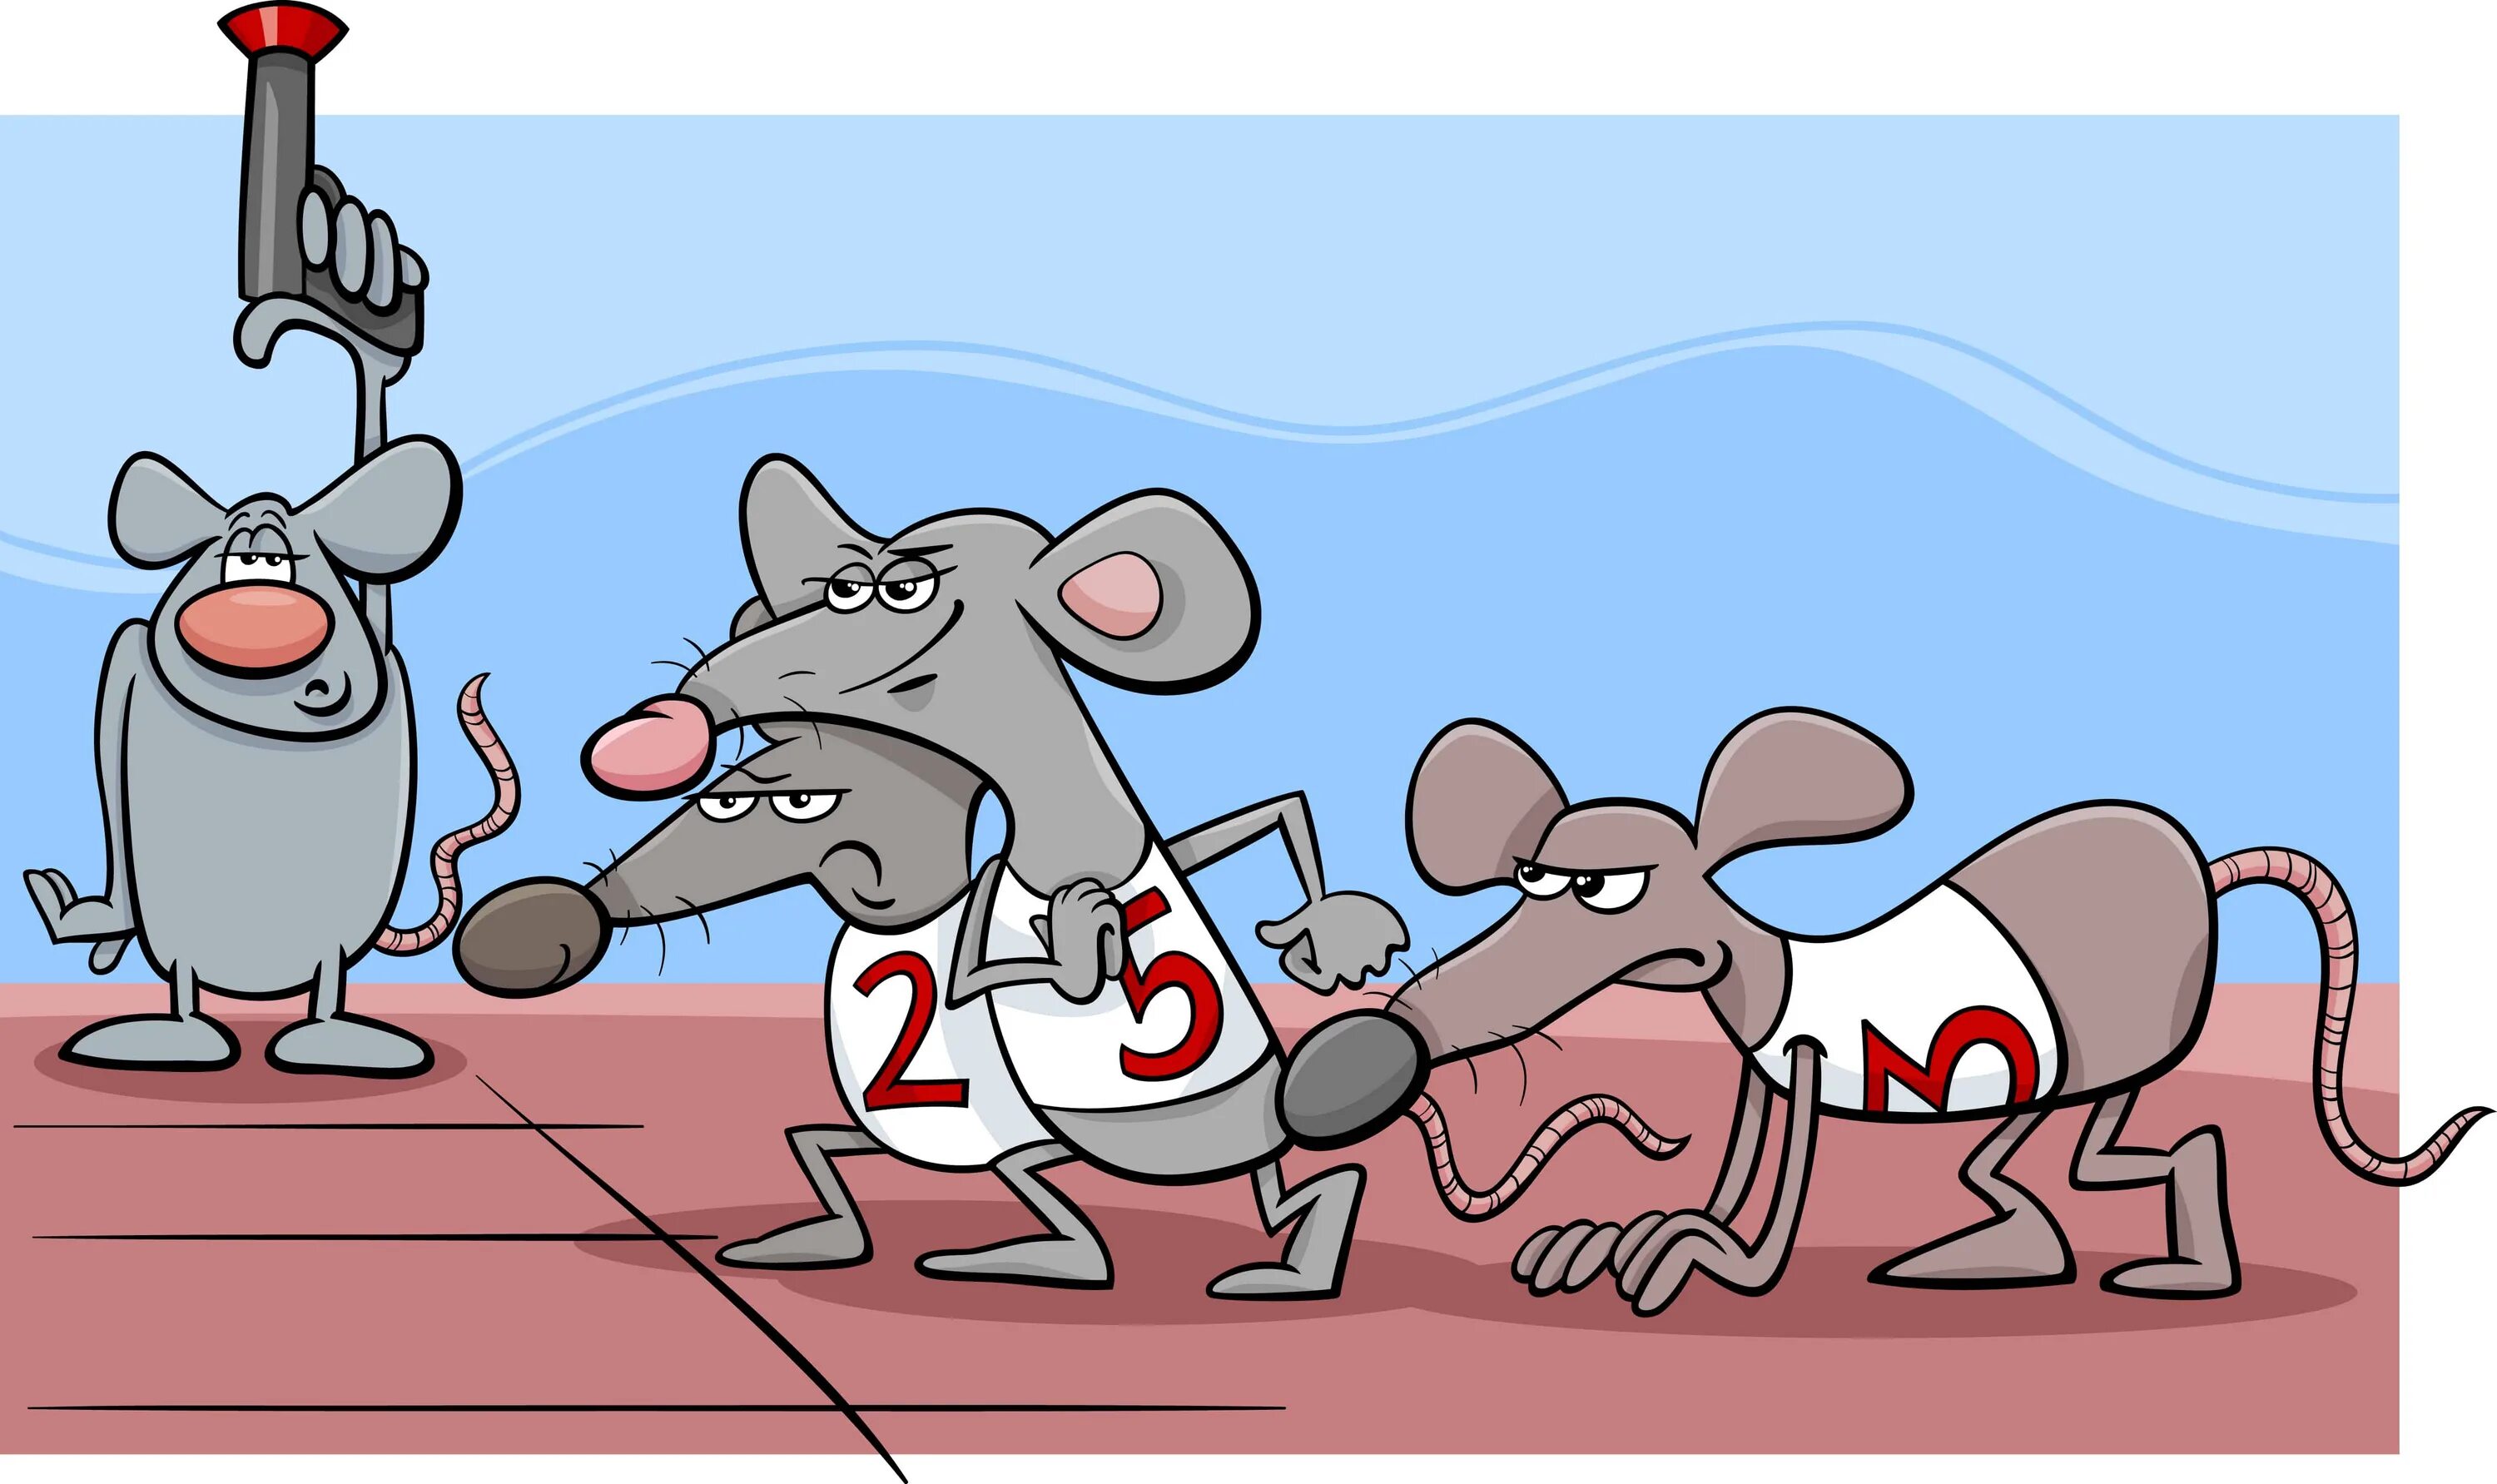 Крысиные бега карикатура. Рисунок к фразеологизму Мышиная возня. Гонки крыс. Крысиные бега иллюстрации